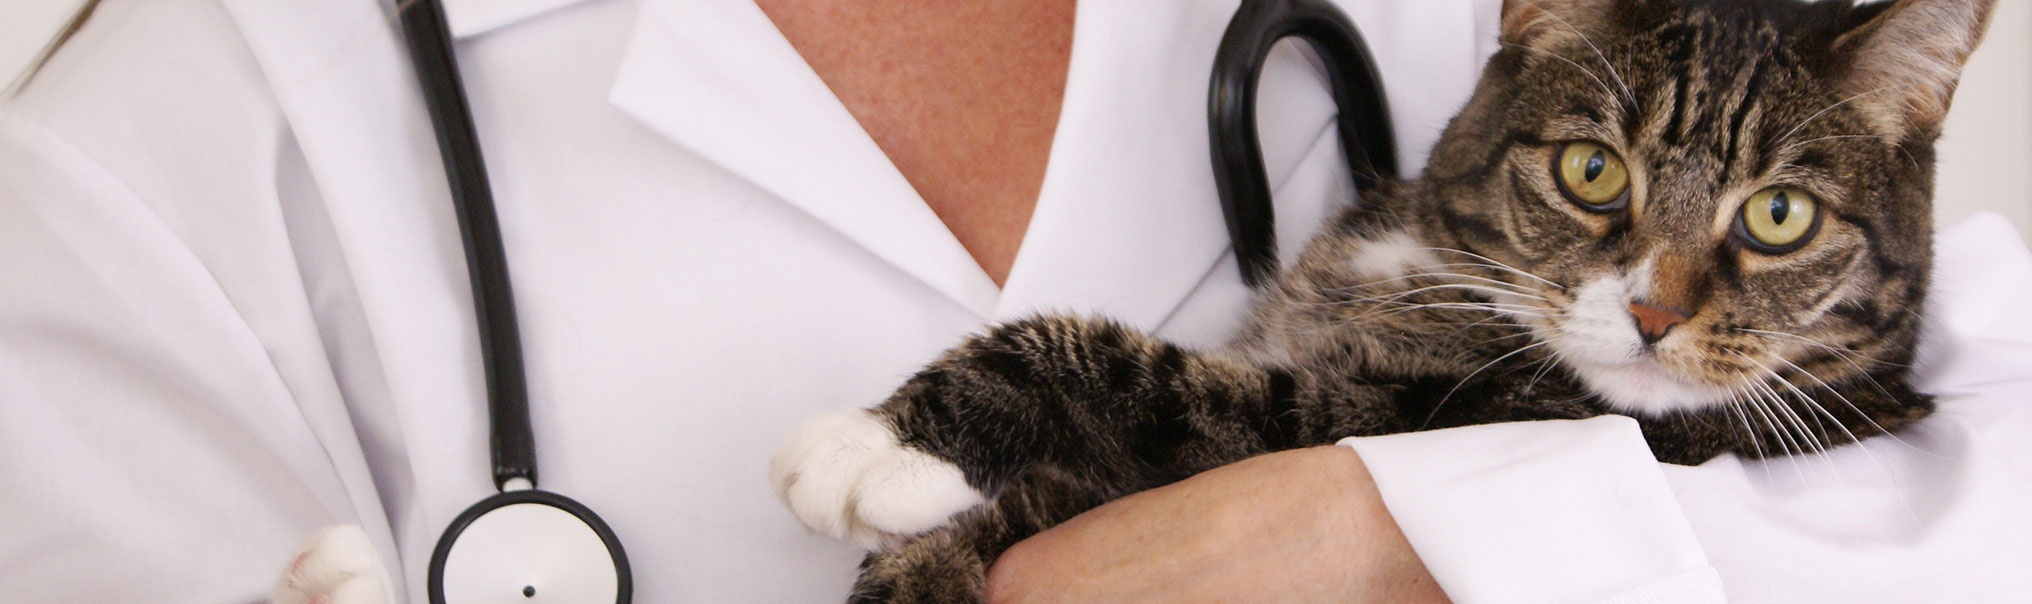 Cat Vaccinations Feline Shots Treatments Mayfield Veterinary Hospital